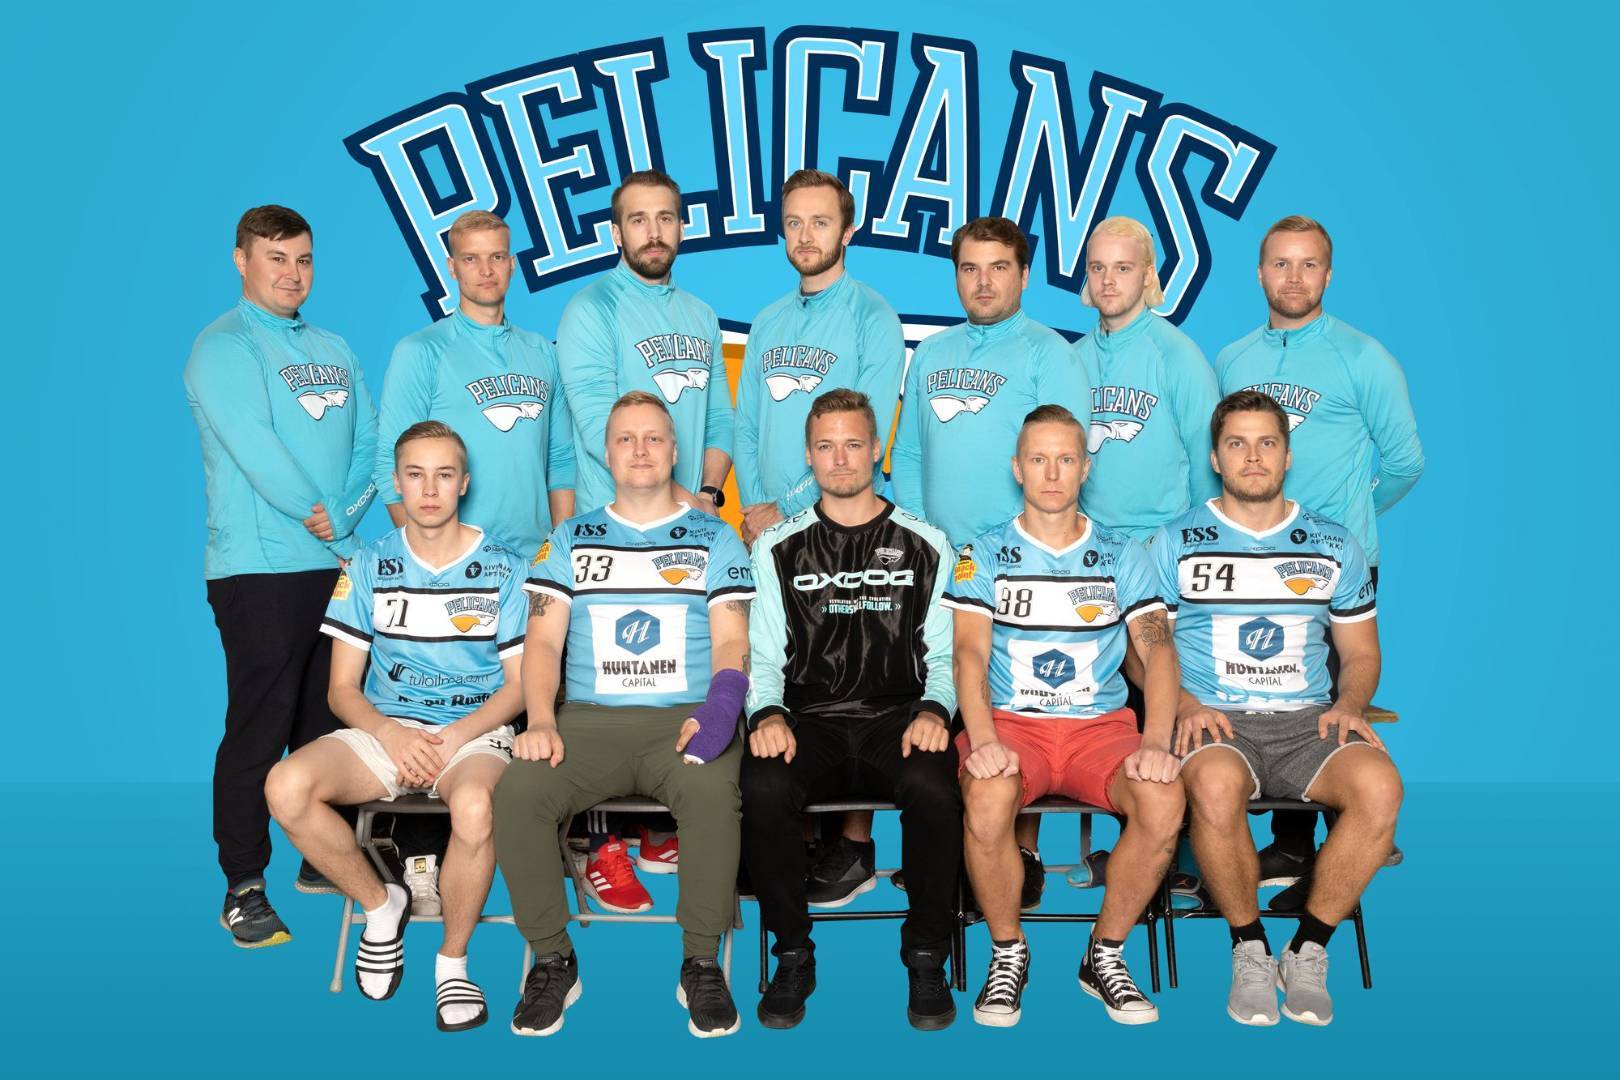 Miesten 2 joukkue palasi voittojen tielle vieraillessaan Joutsassa 26.10.2019